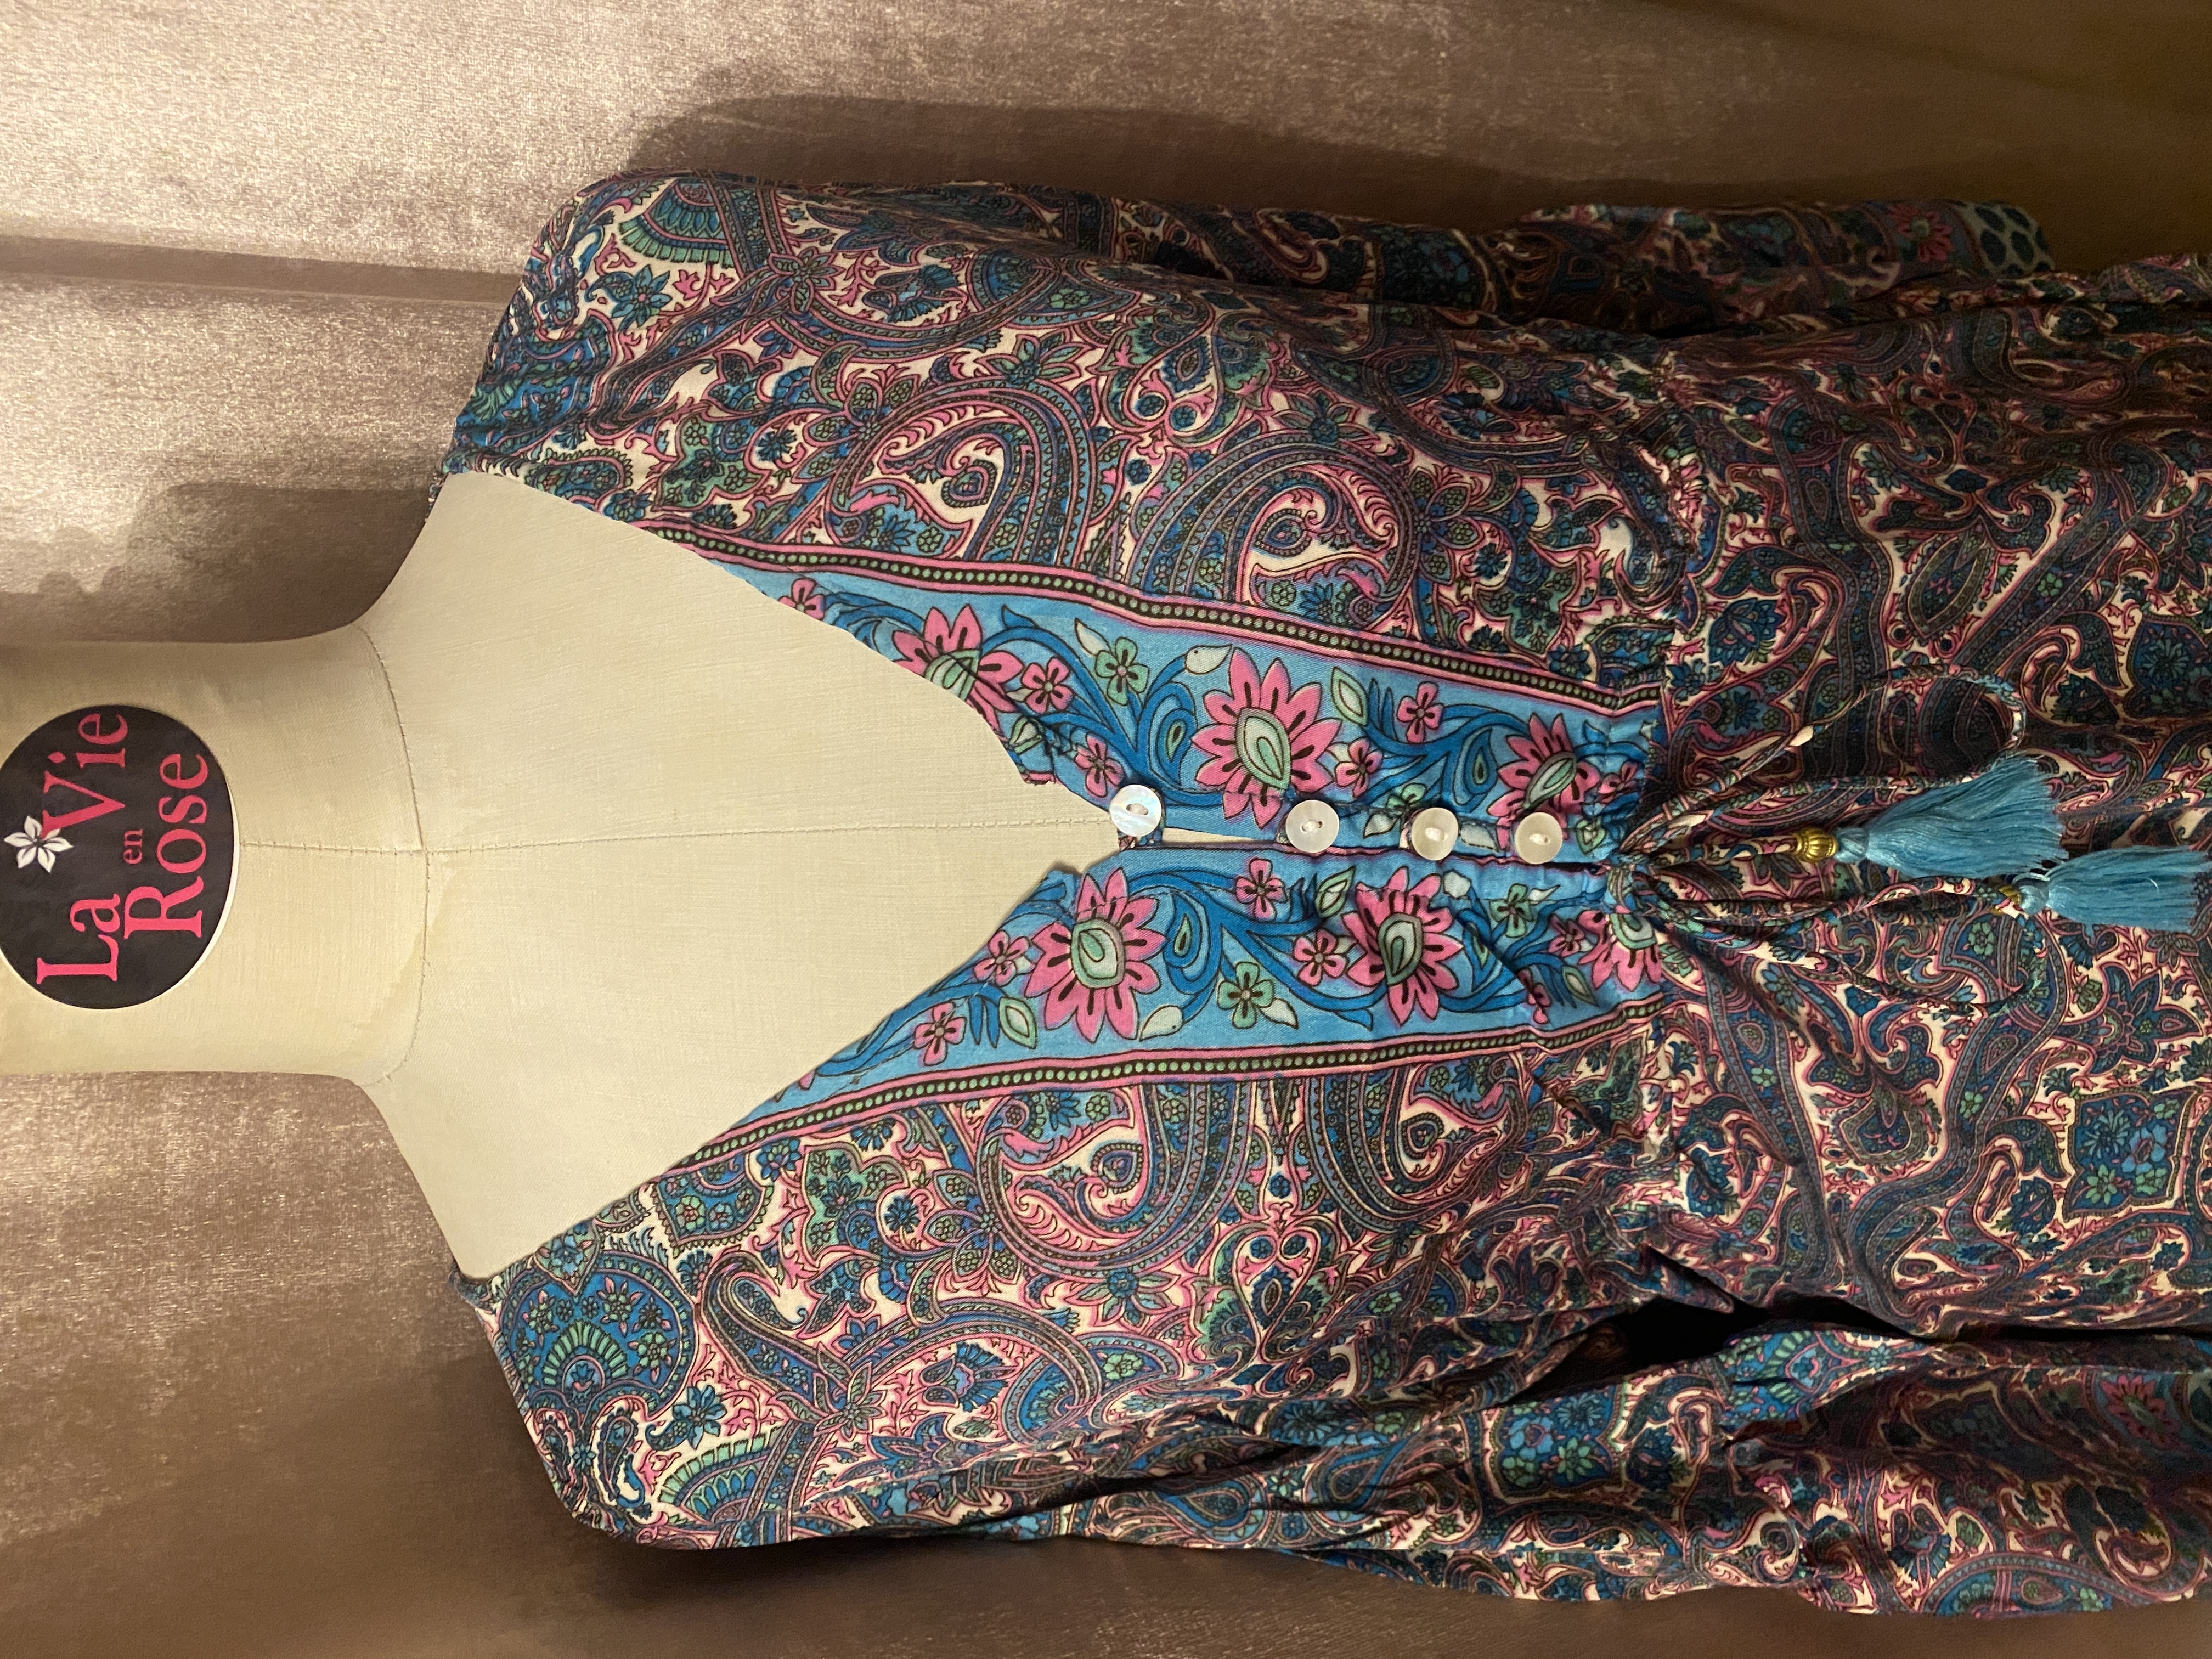 boho stijl jurk in zijde-viscose jurk met roze, wit en turquoise print